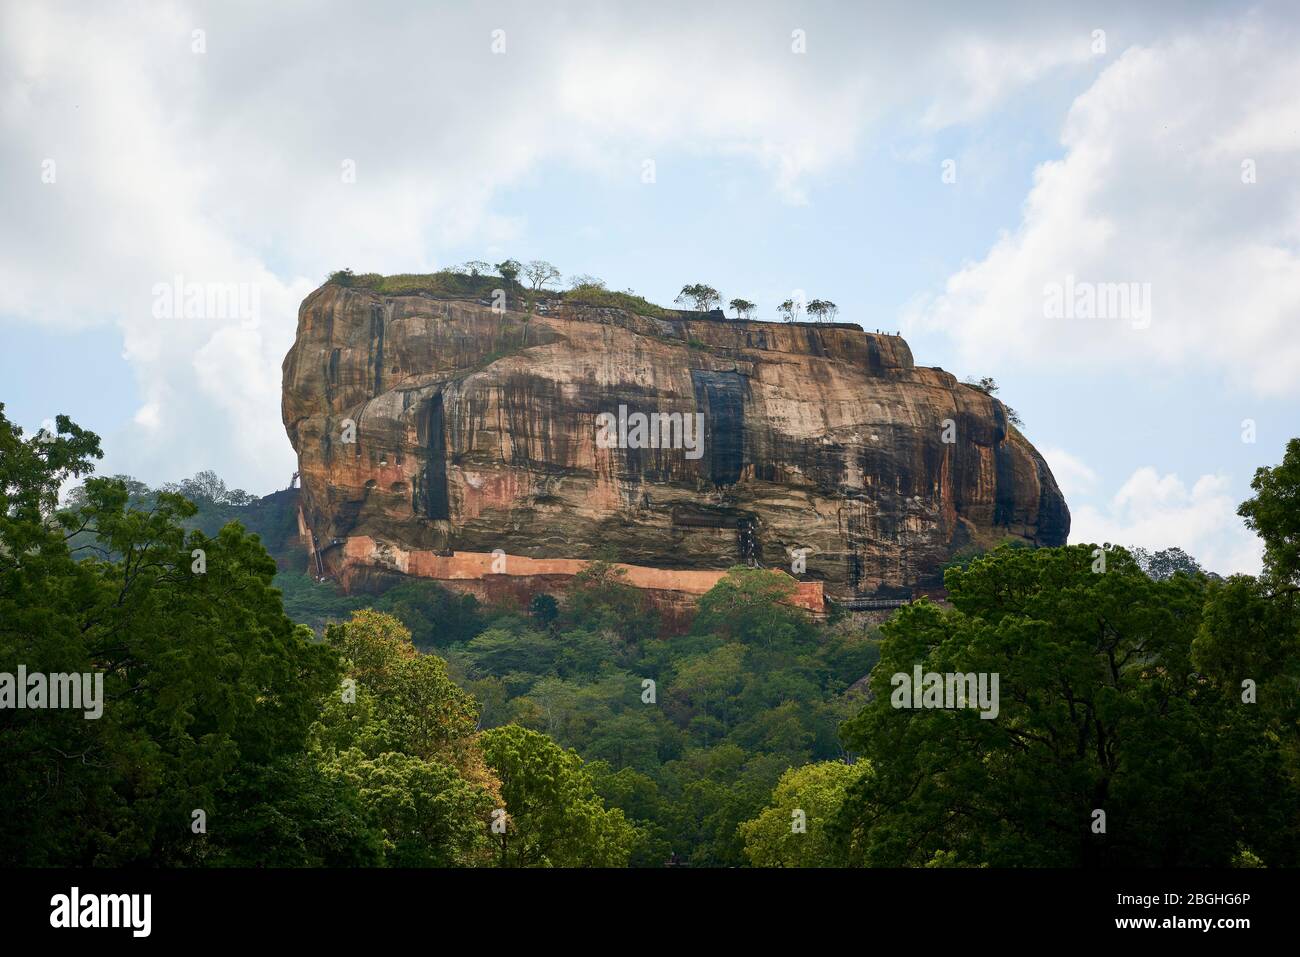 Roccia di Sigiriya in Sri Lanka, vista dal sito archeologico. Questa famosa attrazione turistica è un sito patrimonio dell'umanità dell'UNESCO e presenta rovine provenienti da Foto Stock